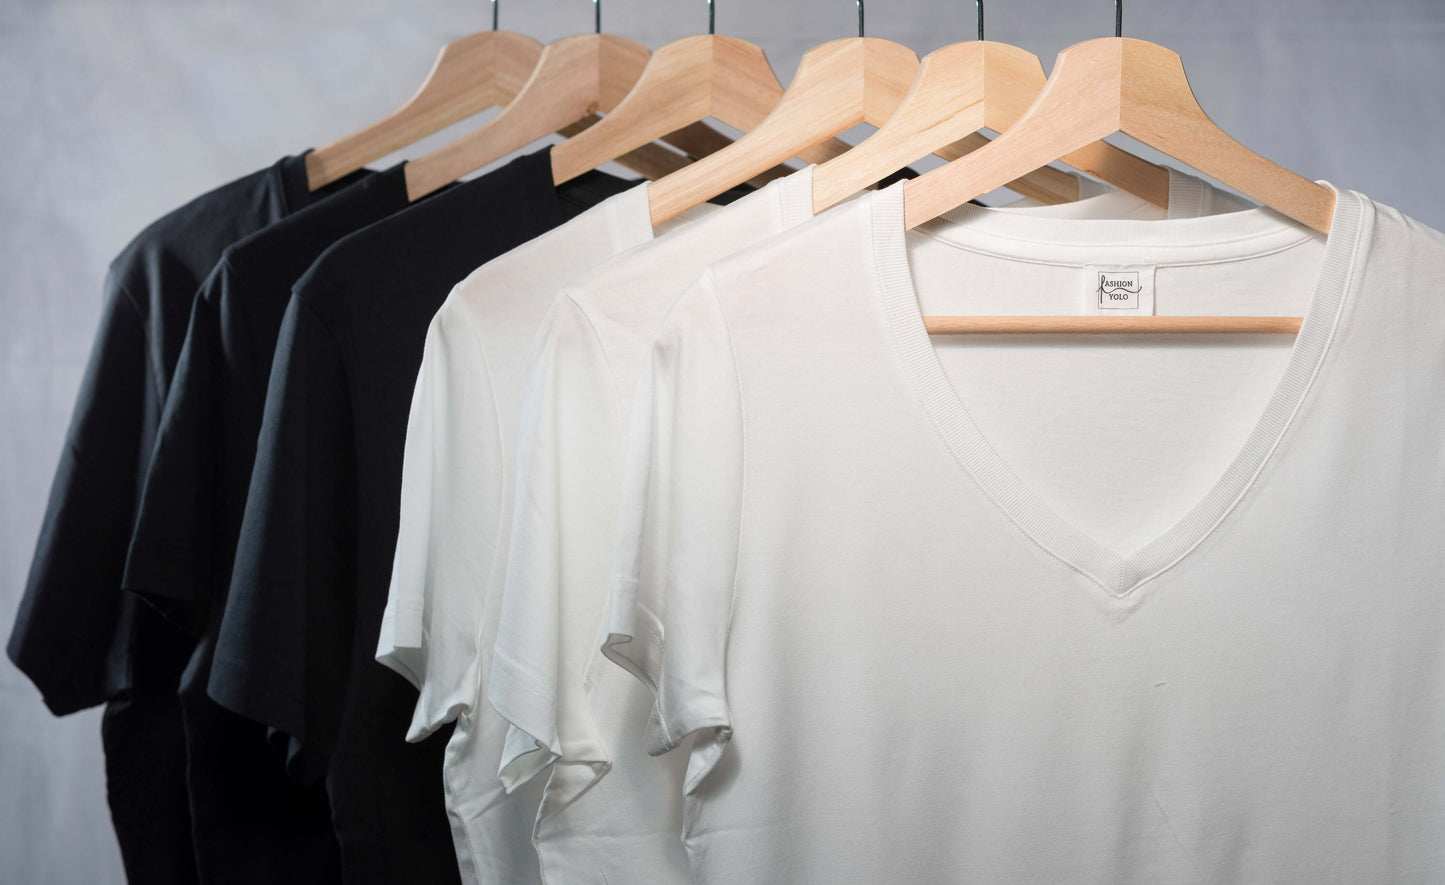 schwarze und weiße lyocell shirts an bügeln